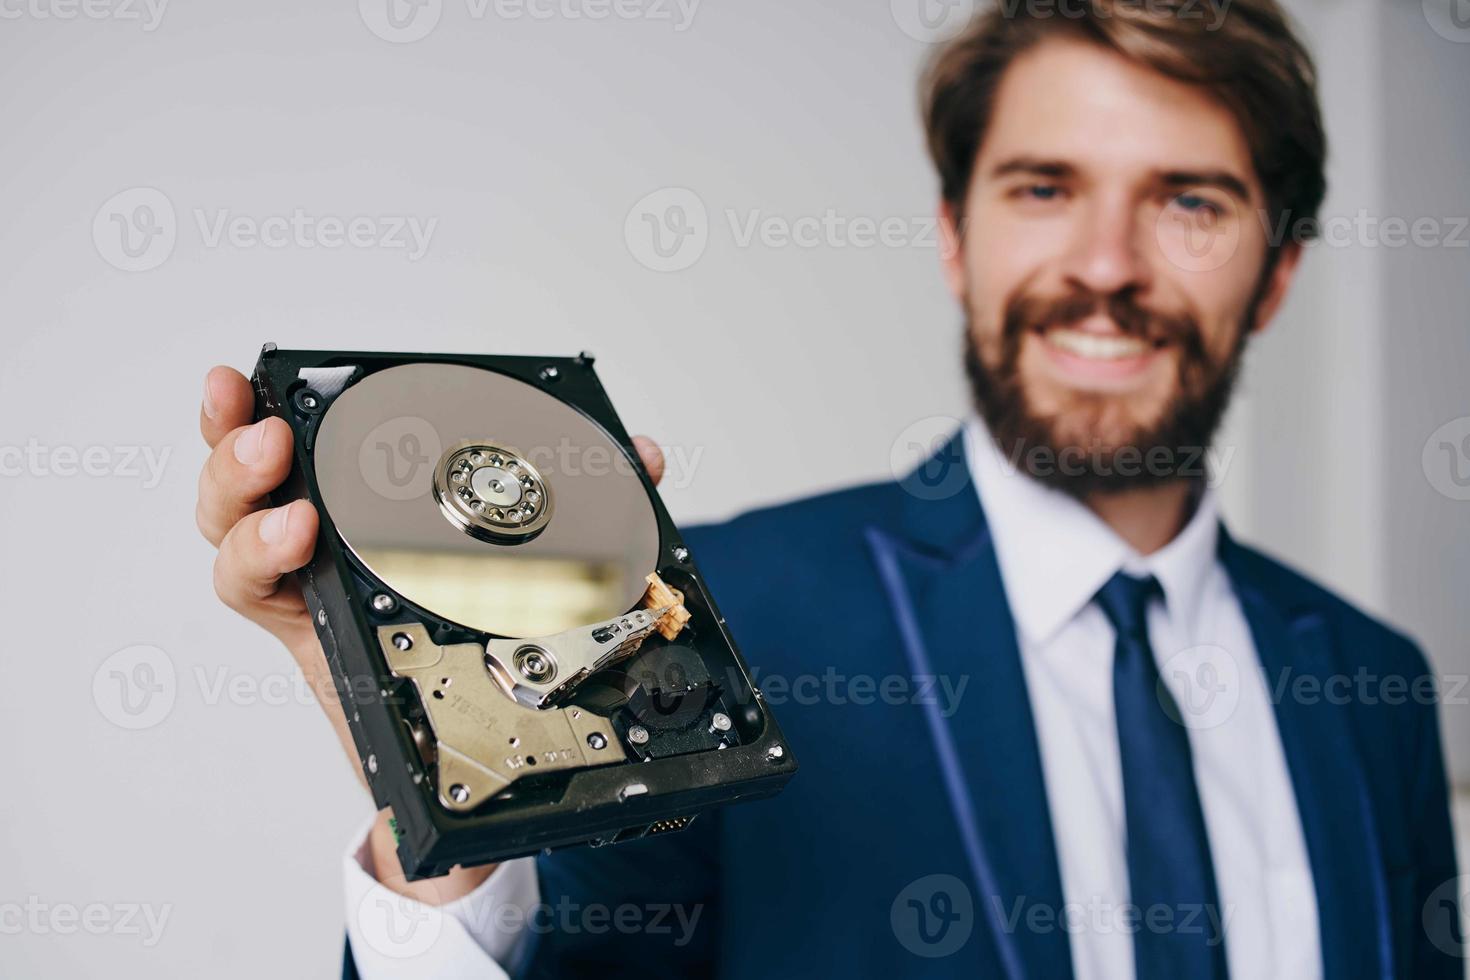 hård disk data skydd återhämtning teknologi foto